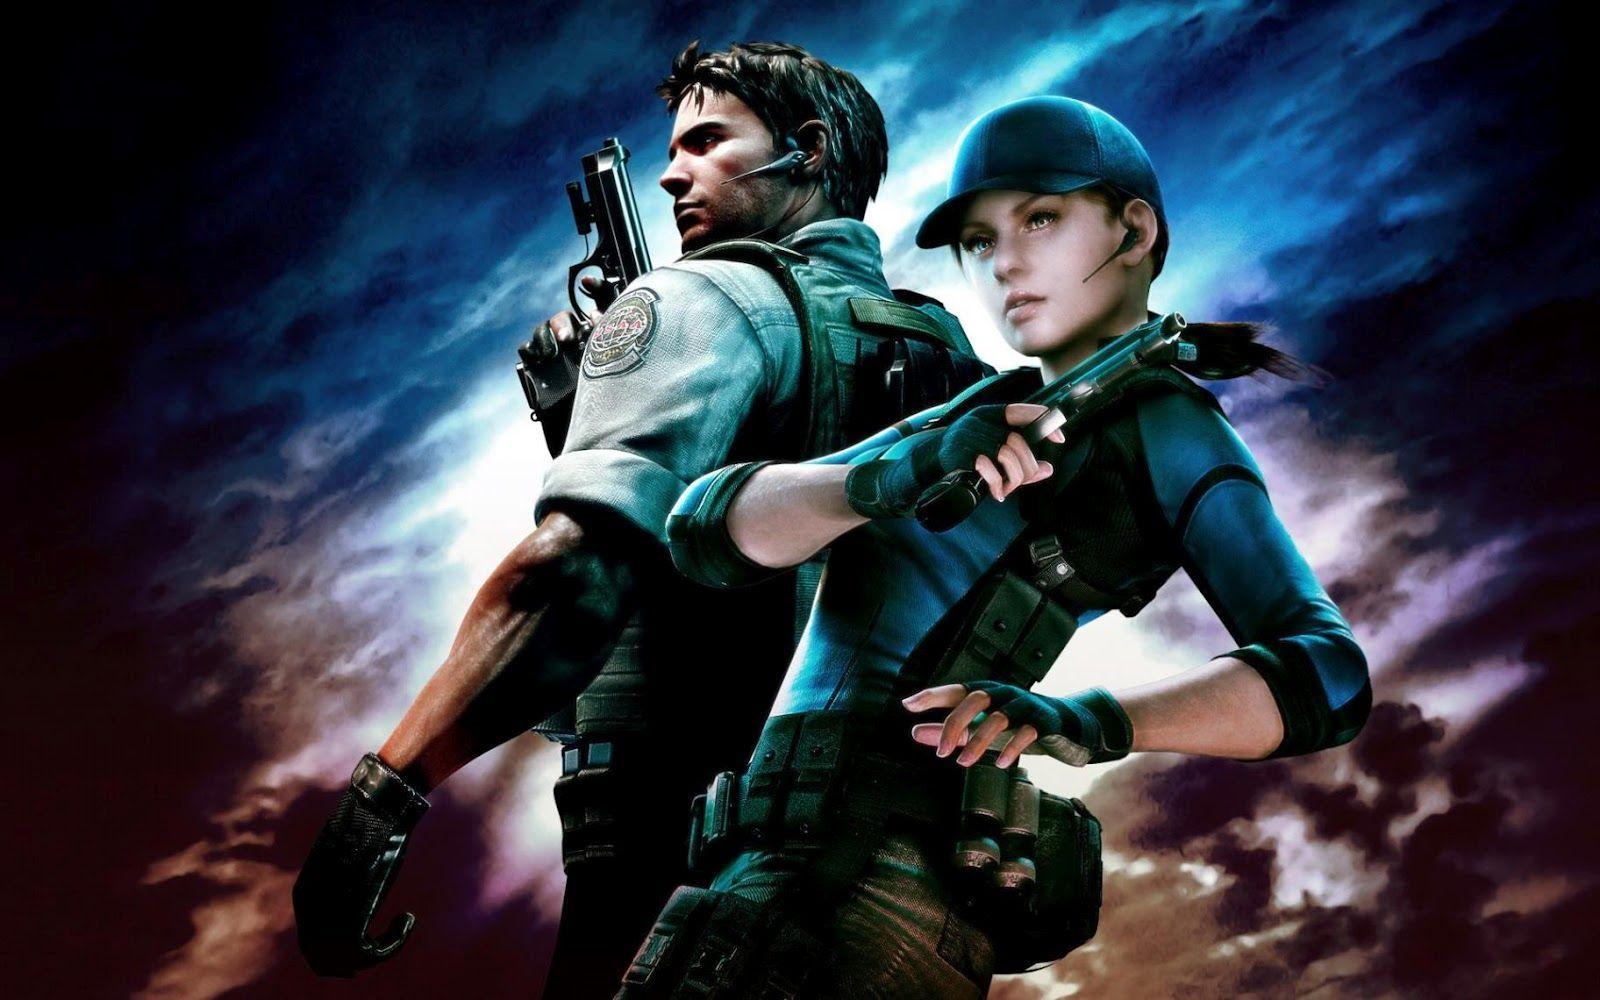 Chris and Jill Valentine Resident Evil 5 Wallpaper